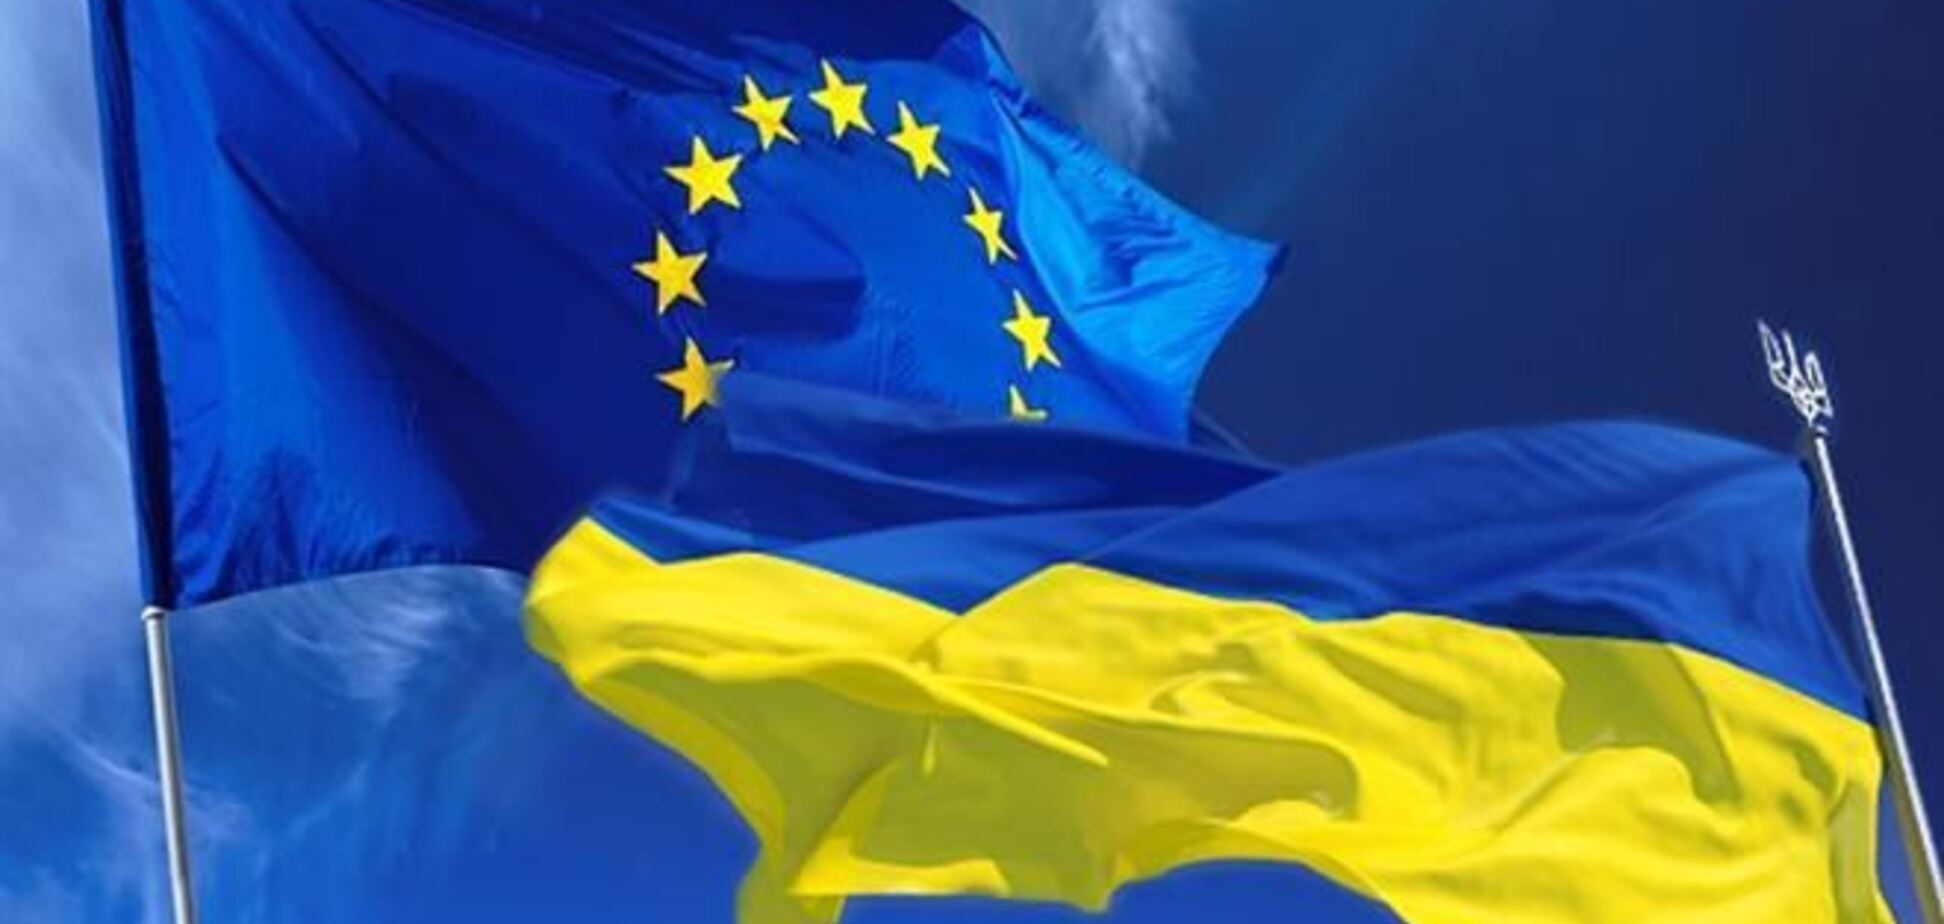 Ни Украина, ни ЕС пока не готовы к ассоциации  - МИД